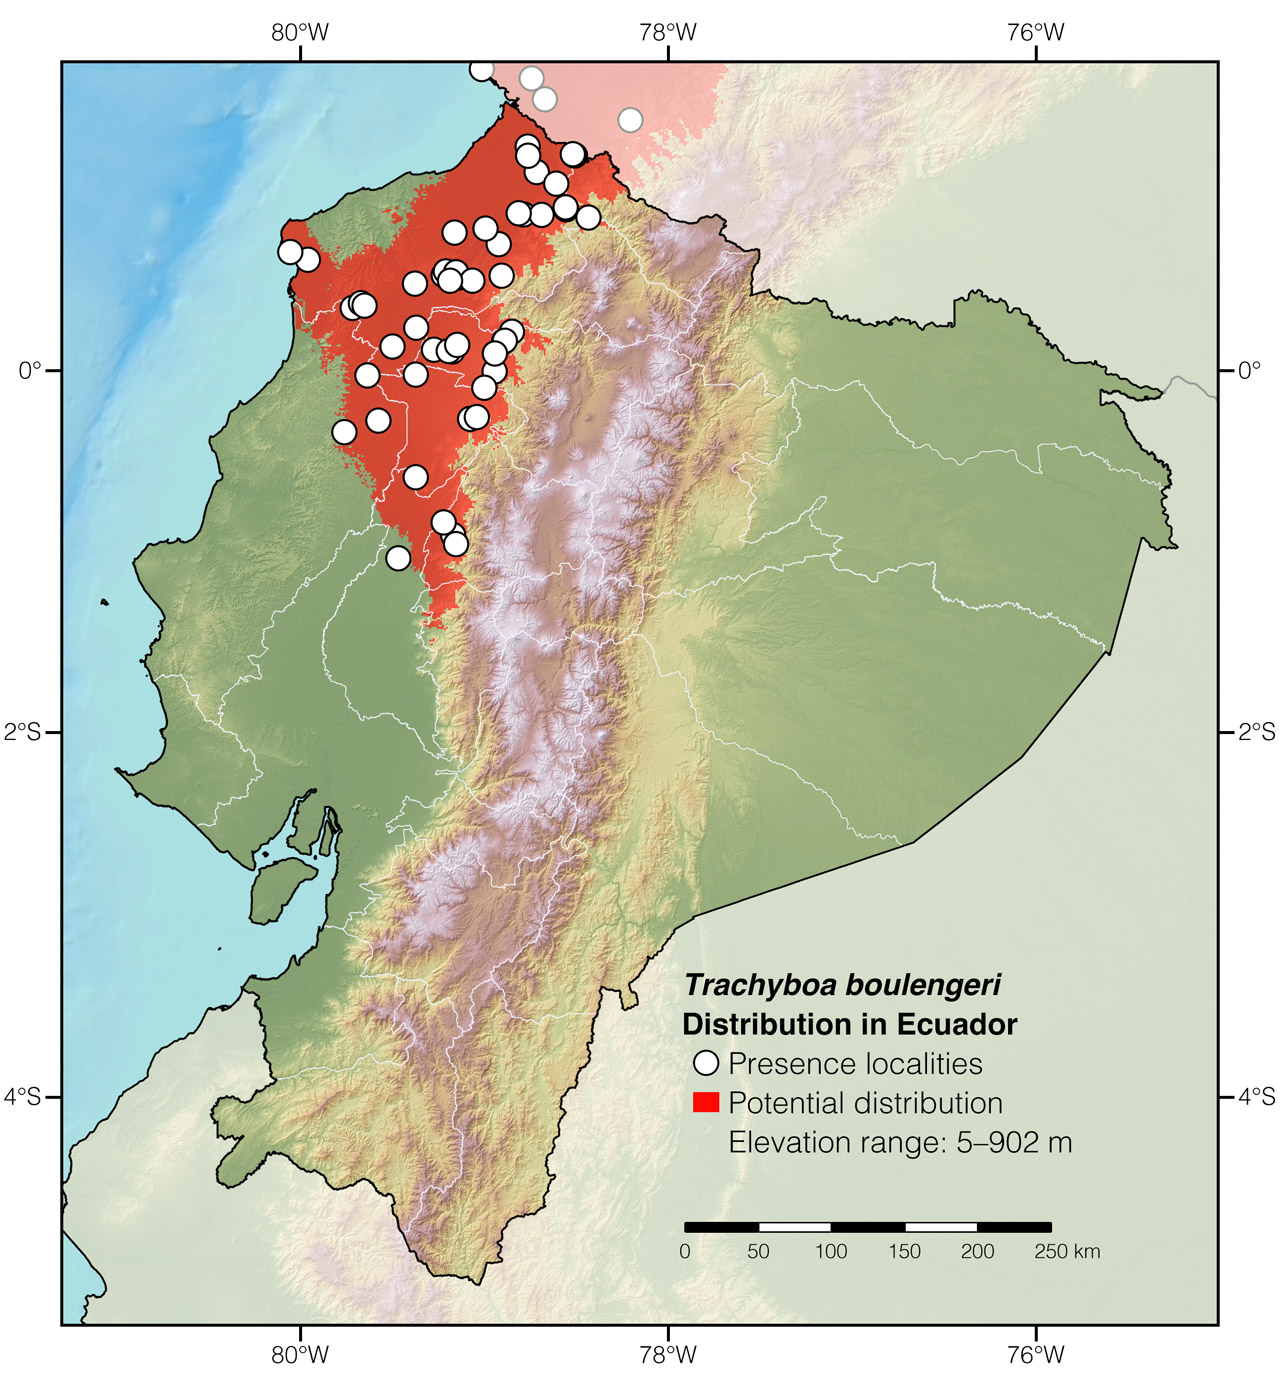 Distribution of Trachyboa boulengeri in Ecuador